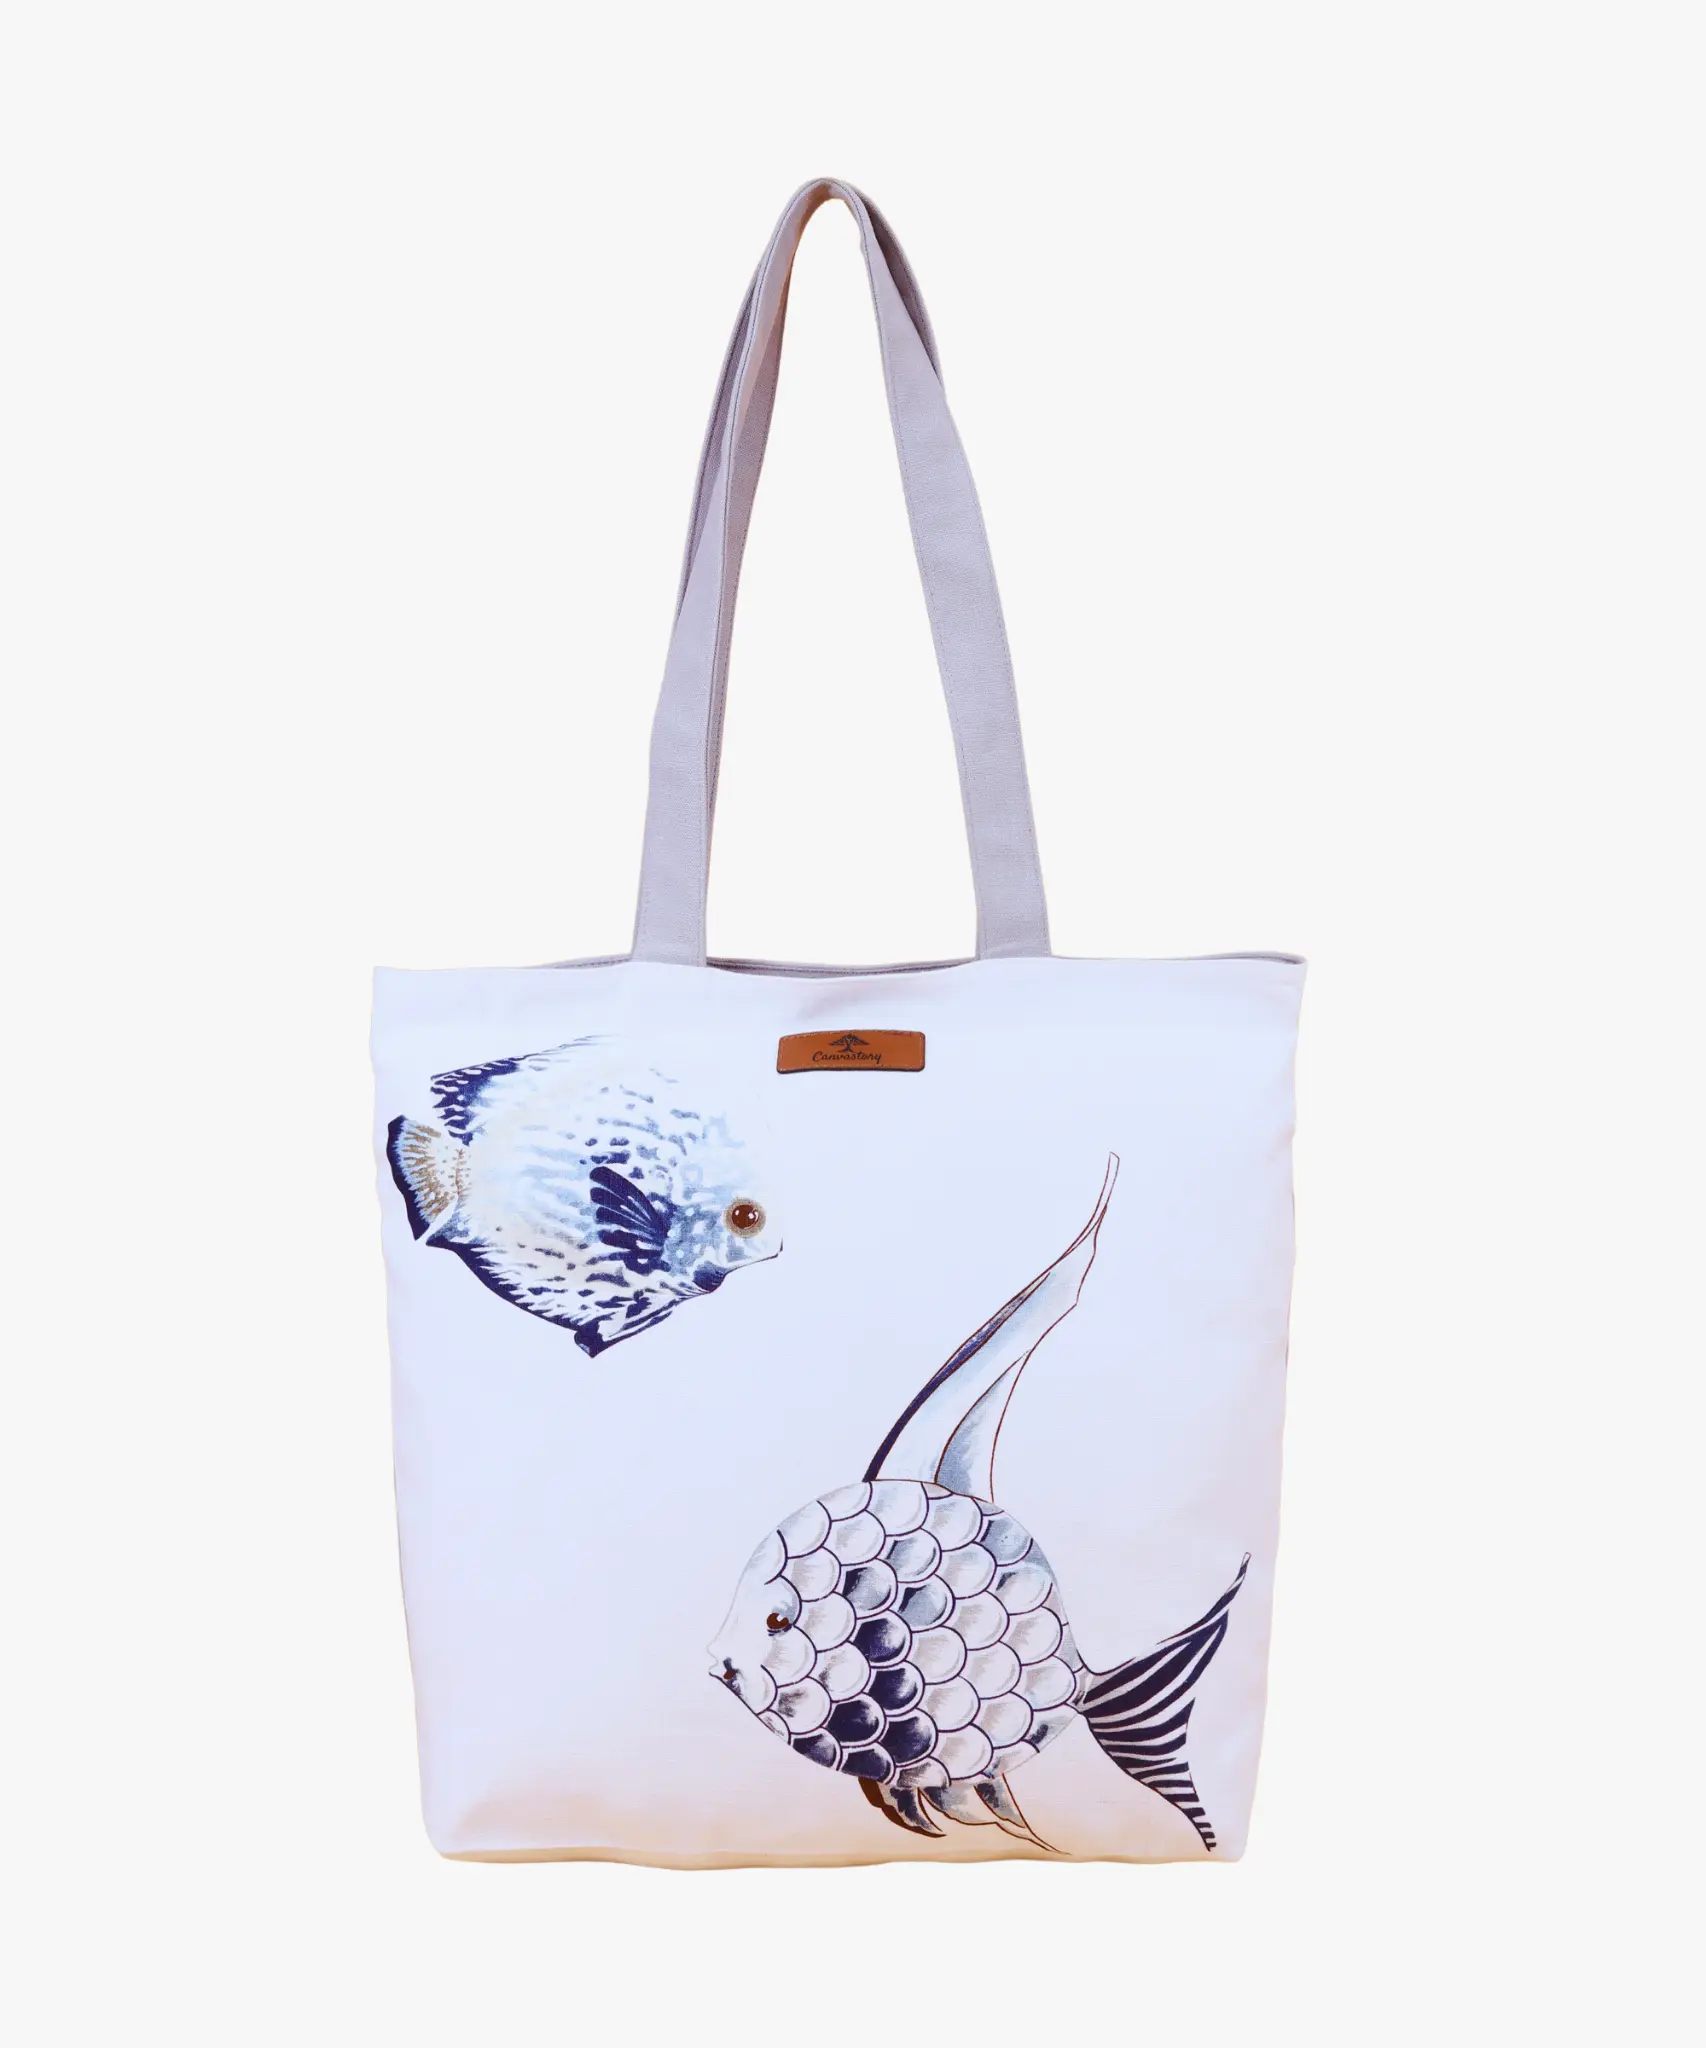 Blue fish tote bag